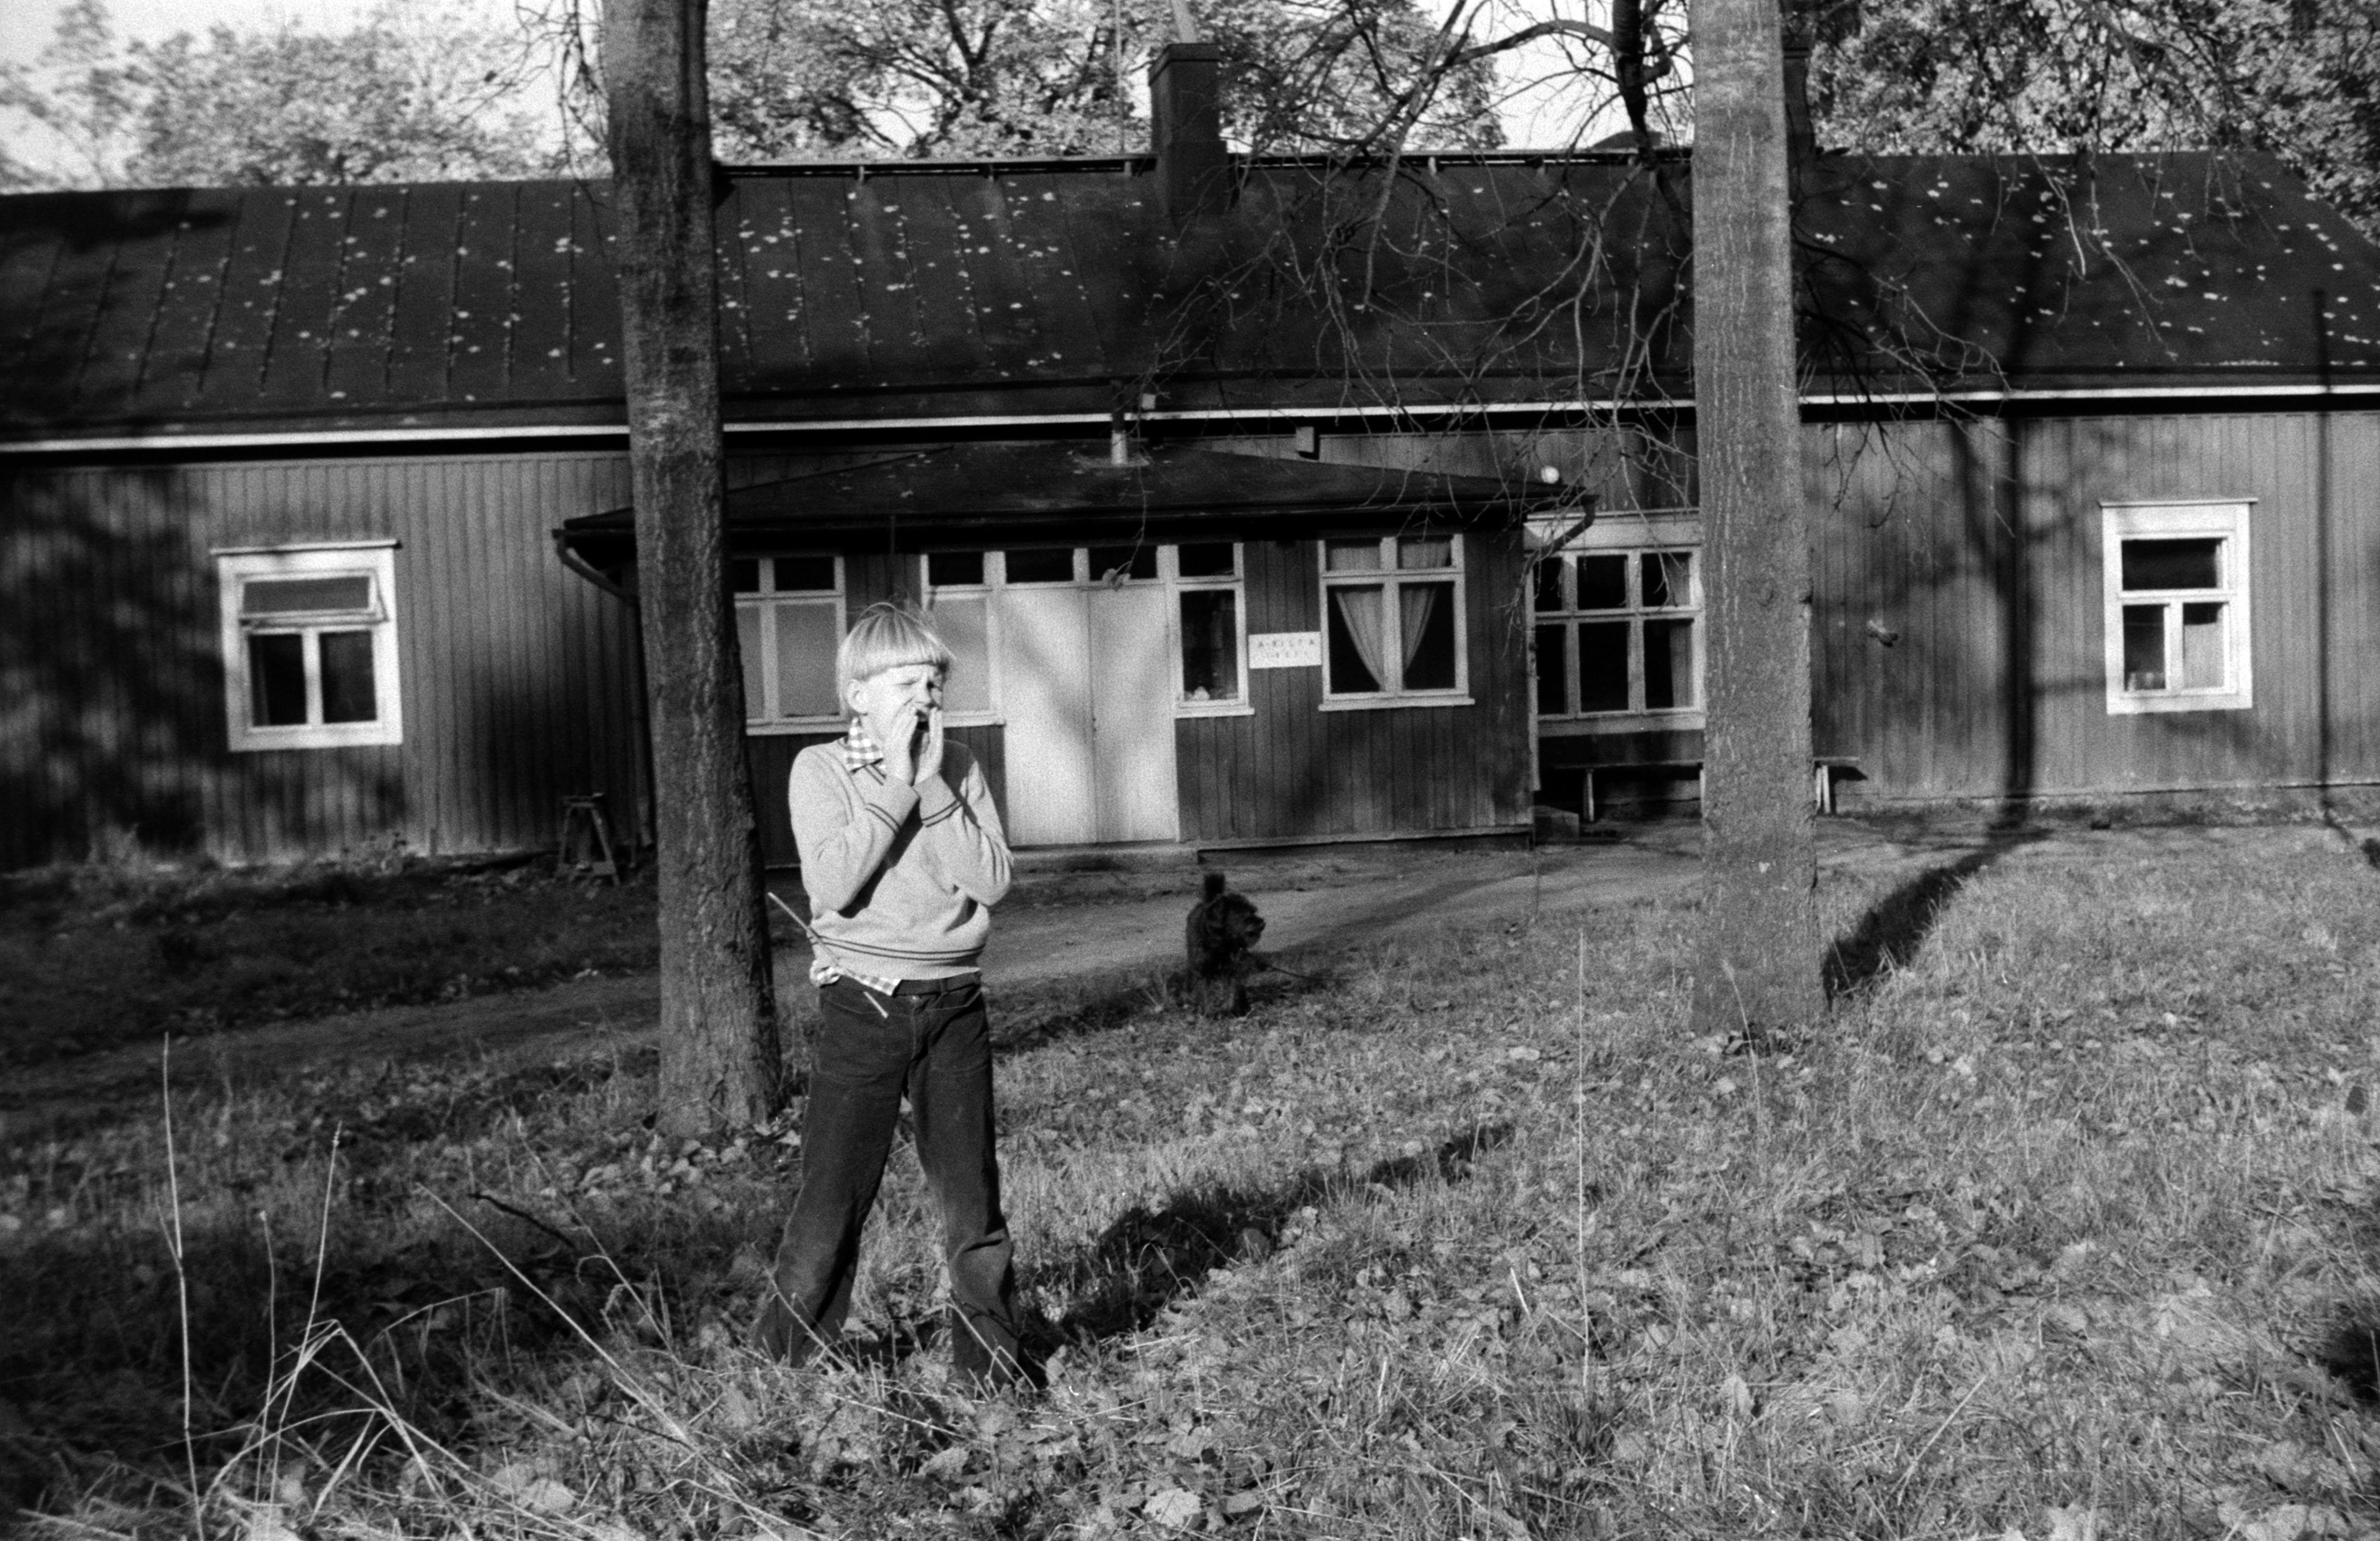 Poika oppilaskoti Toivolan pihassa. Kuvannut Jarno Peltonen vuonna 1974.